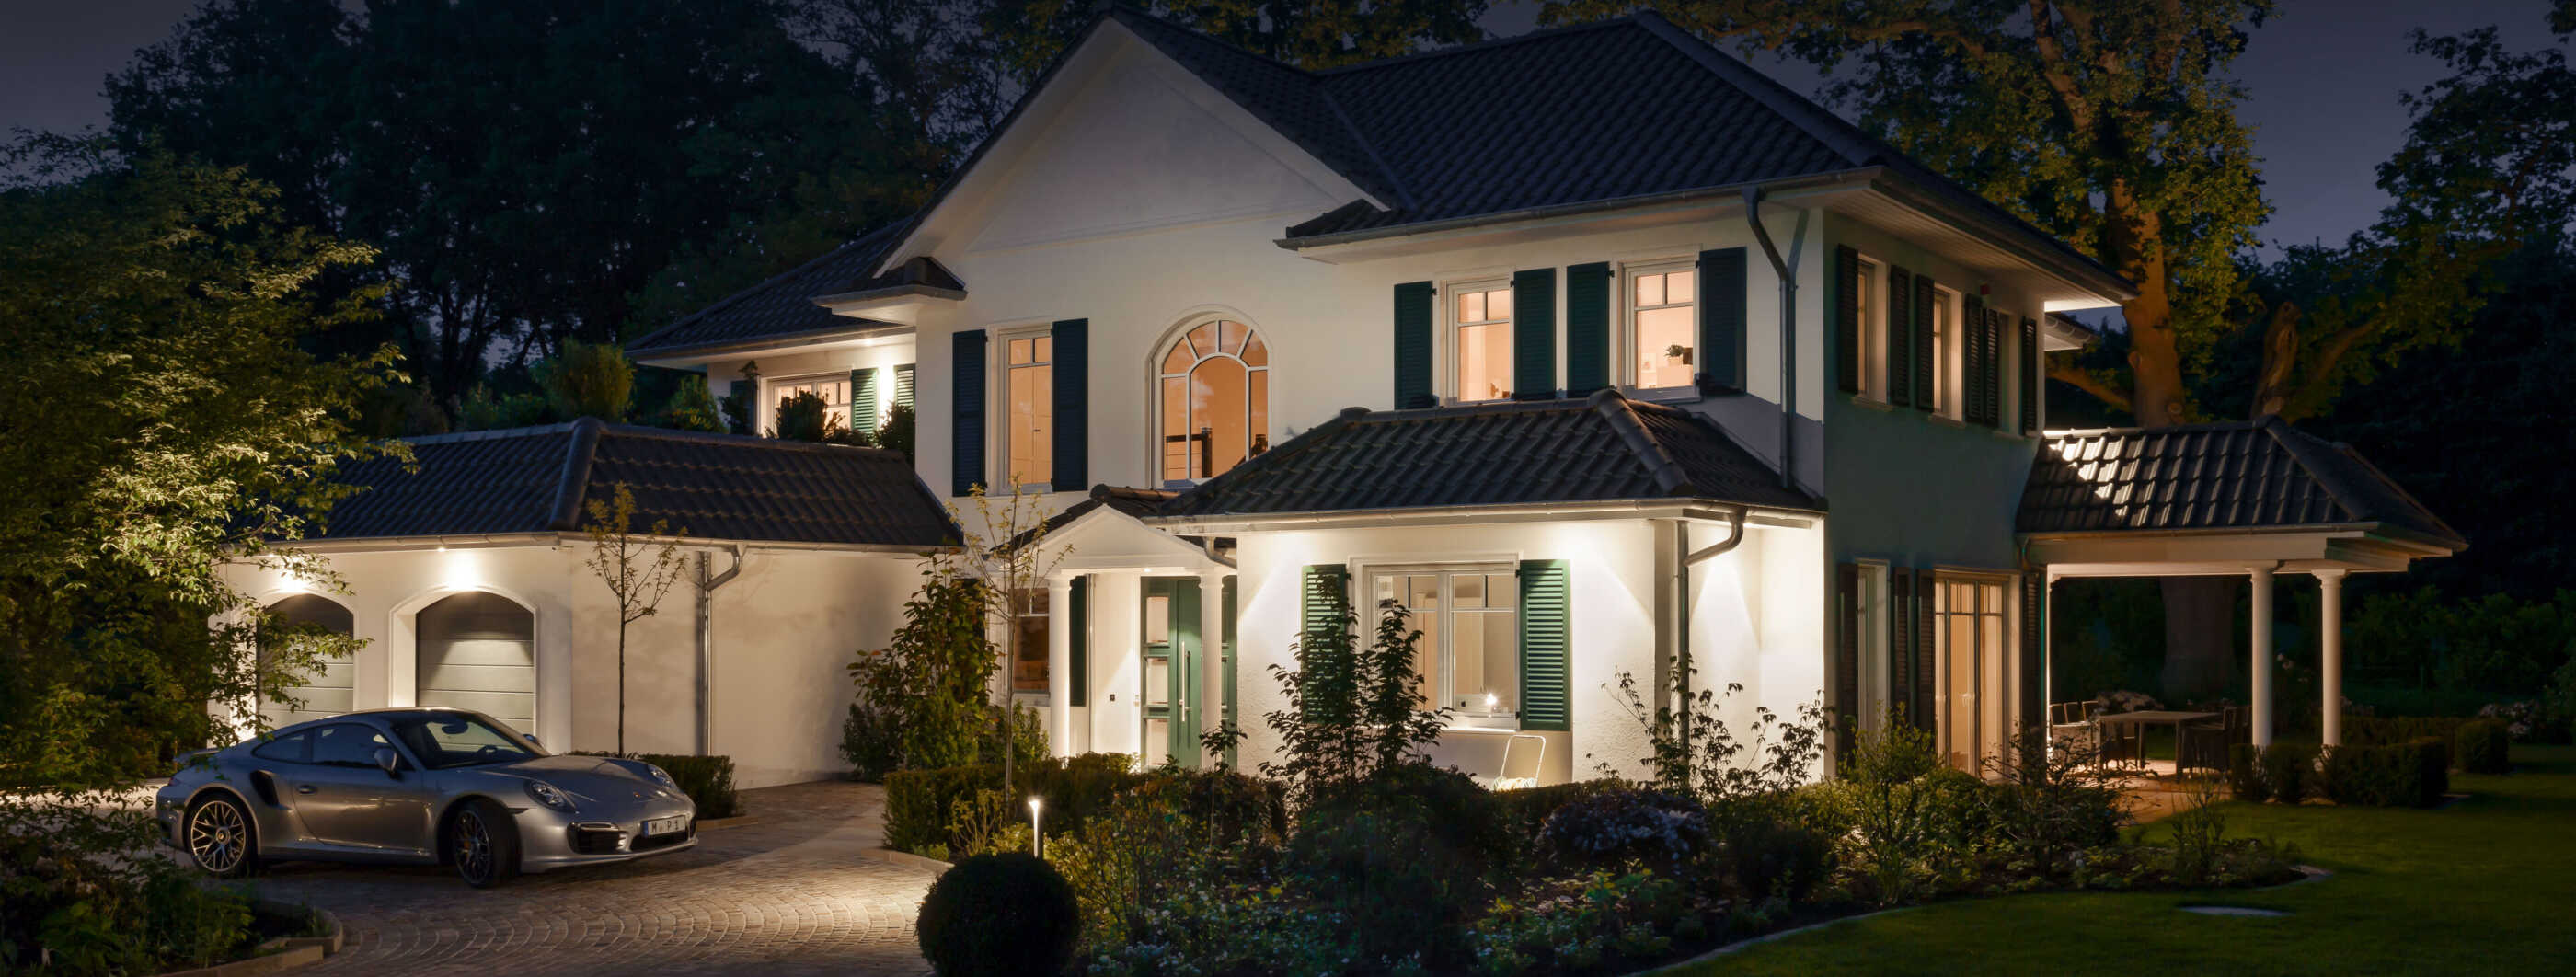 Eine luxuriöse Villa bei Nacht. In der Einfahrt steht ein Sportwagen, die Fassade wird durch Einbaudownlights punktuell beleuchtet. (Foto: Prediger Lichtberater)